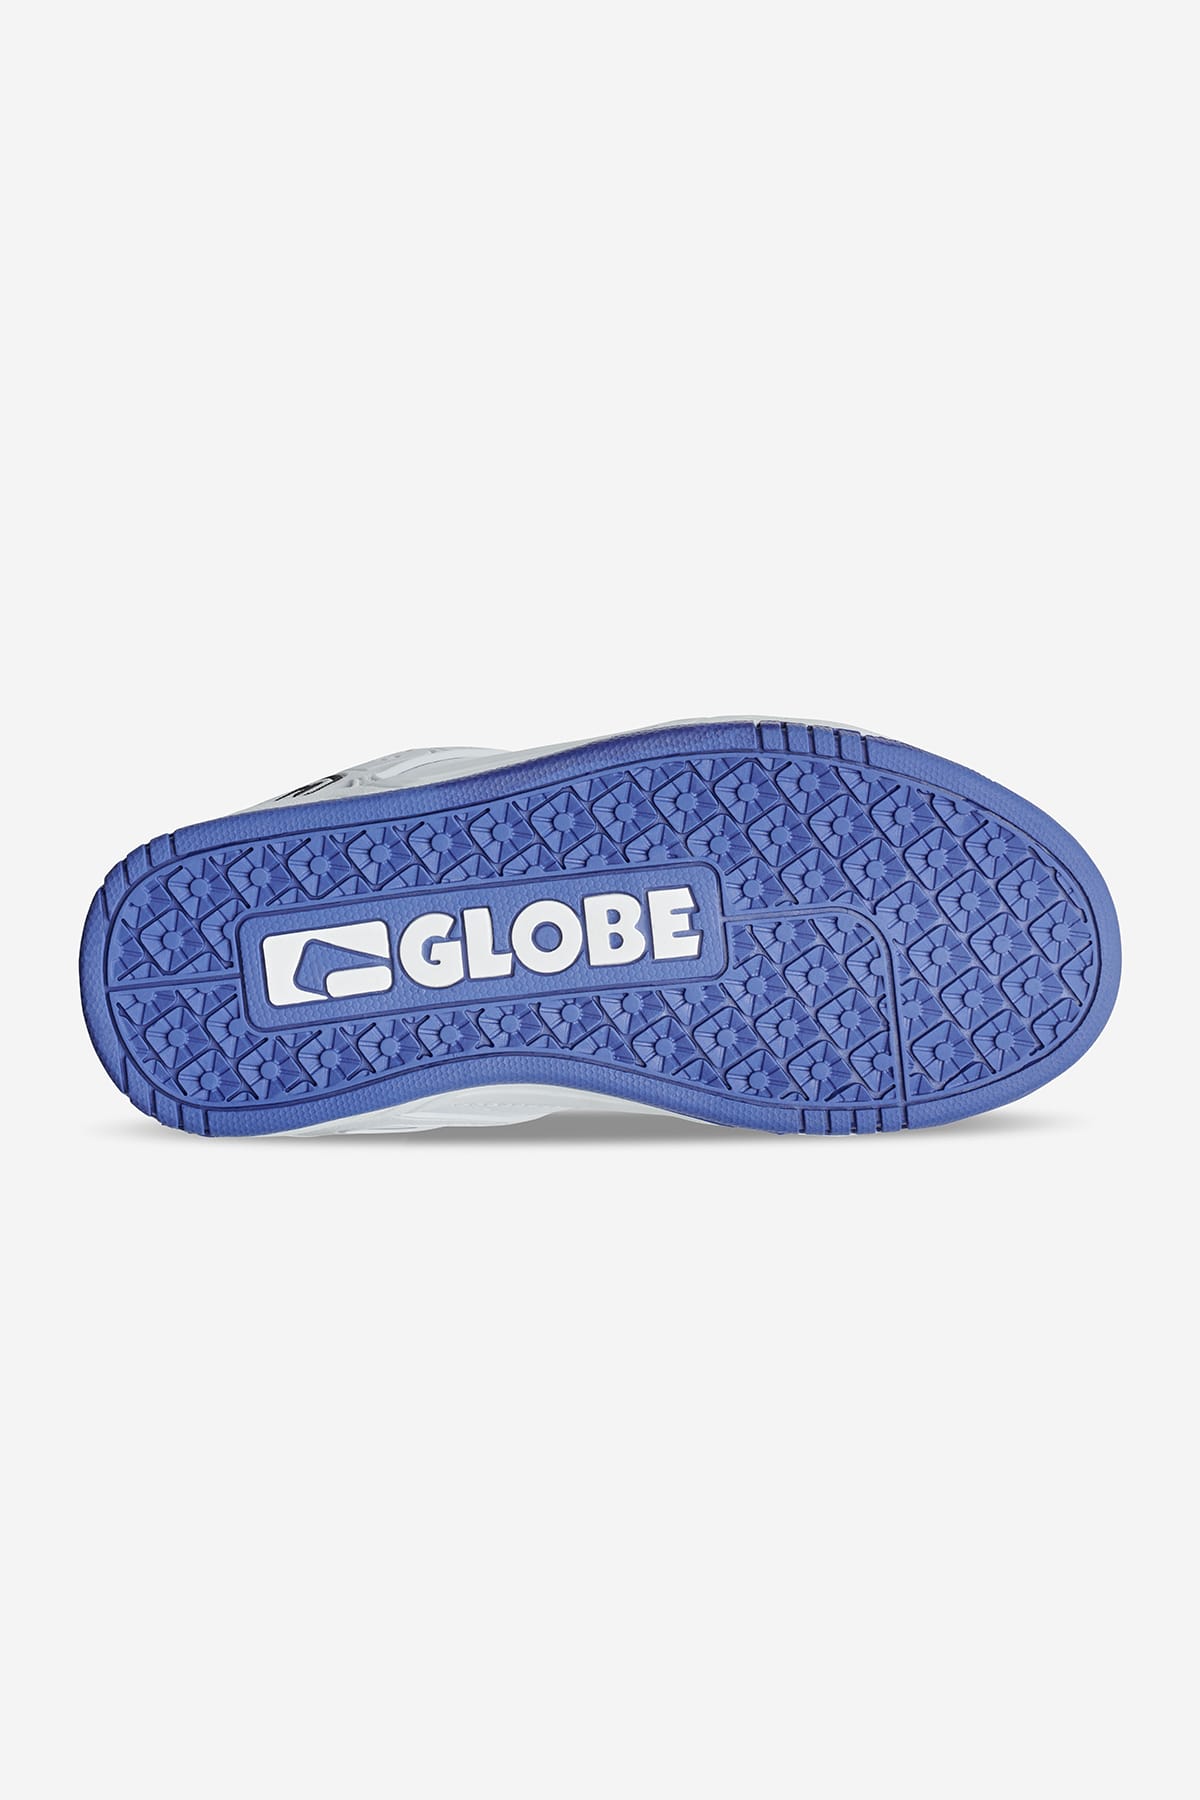 Globe - Tilt Kids - White/Cobalt - skateboard Chaussures